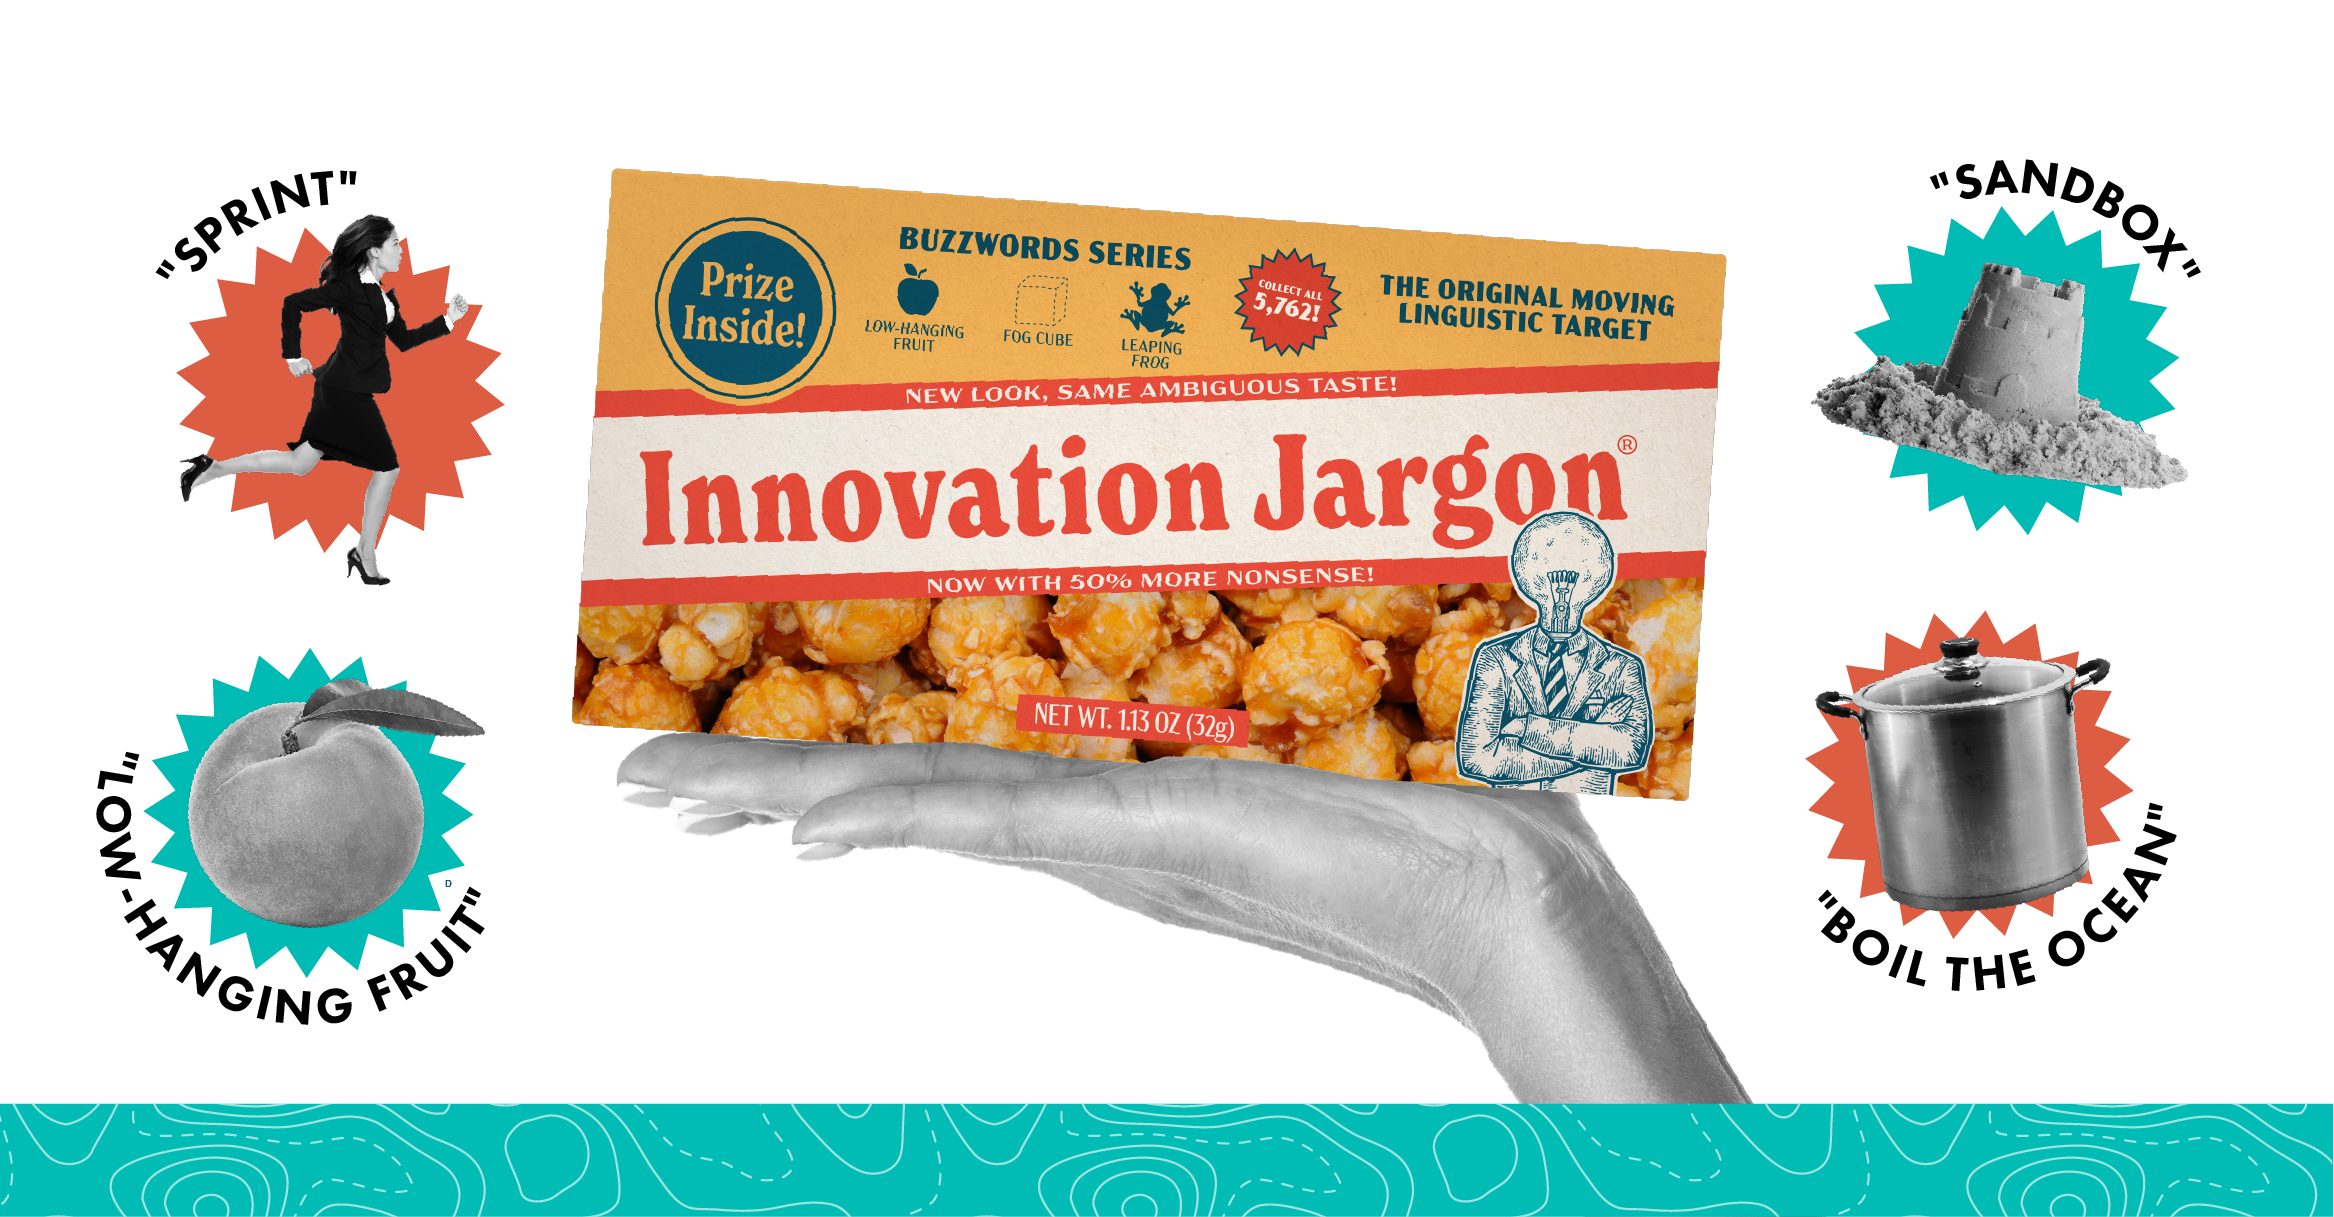 Cracker Jack Gems of Innovation Jargon Image